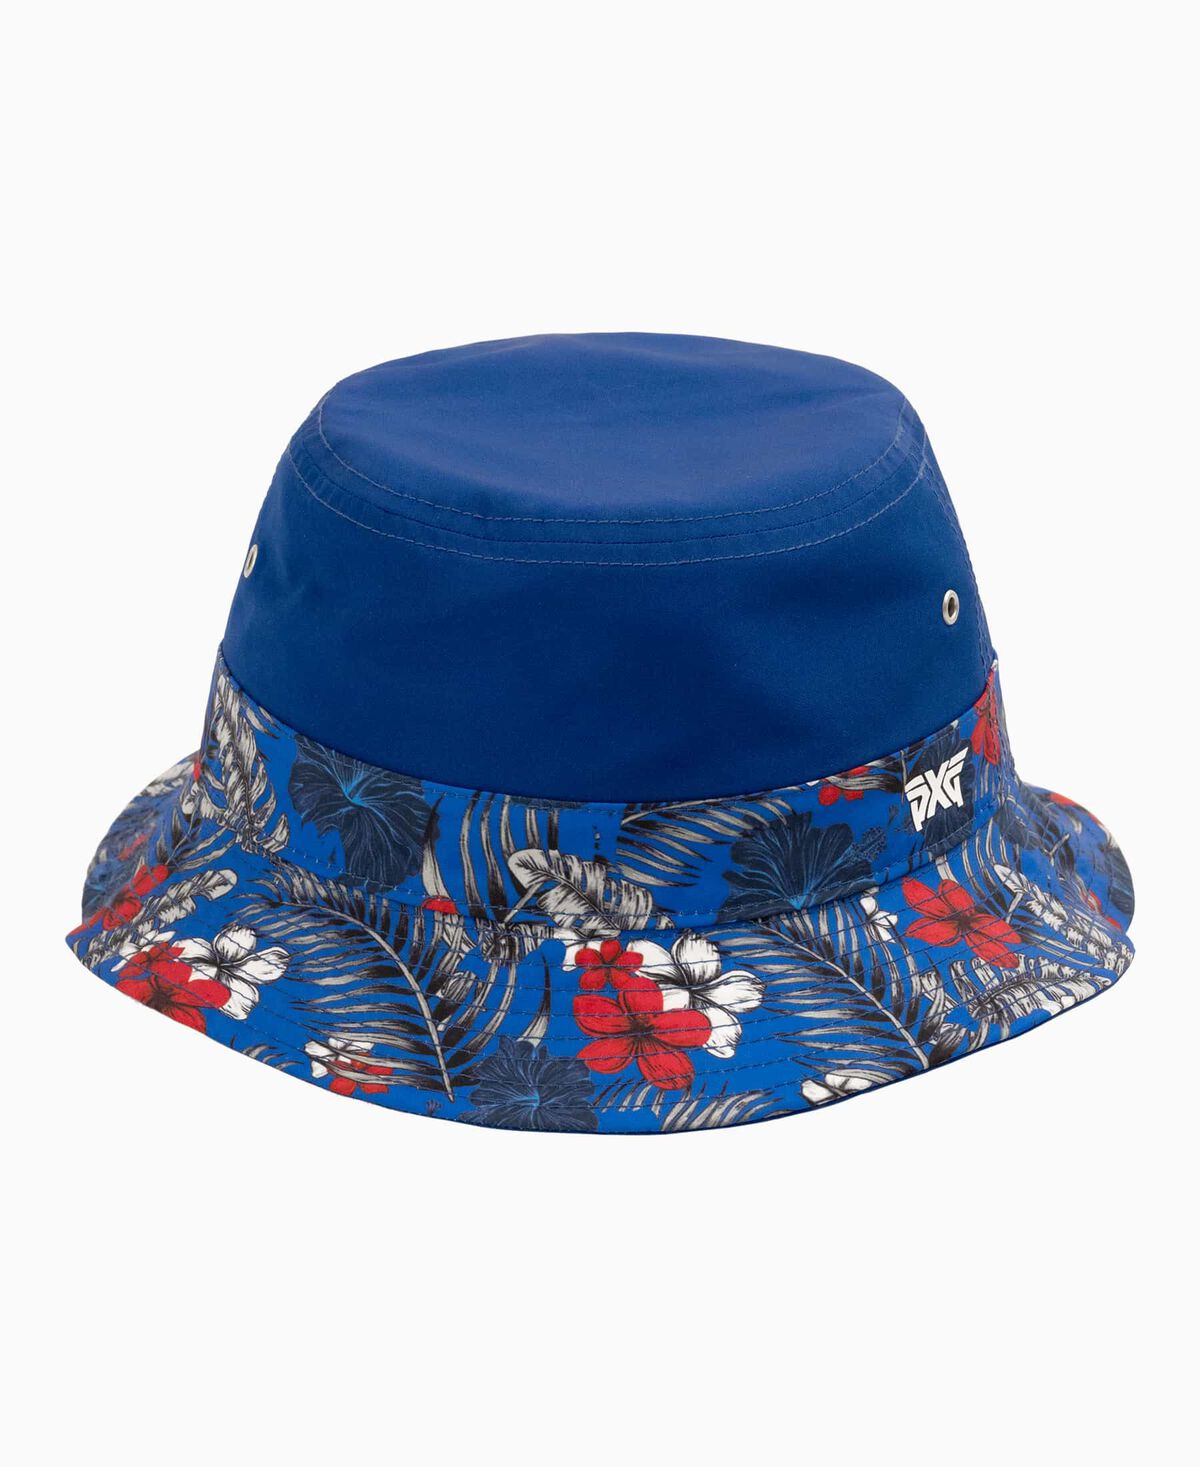 Aloha 24 Bucket Hat | Golf Hats |Shop Caps, Visors, Bucket Hats & More ...